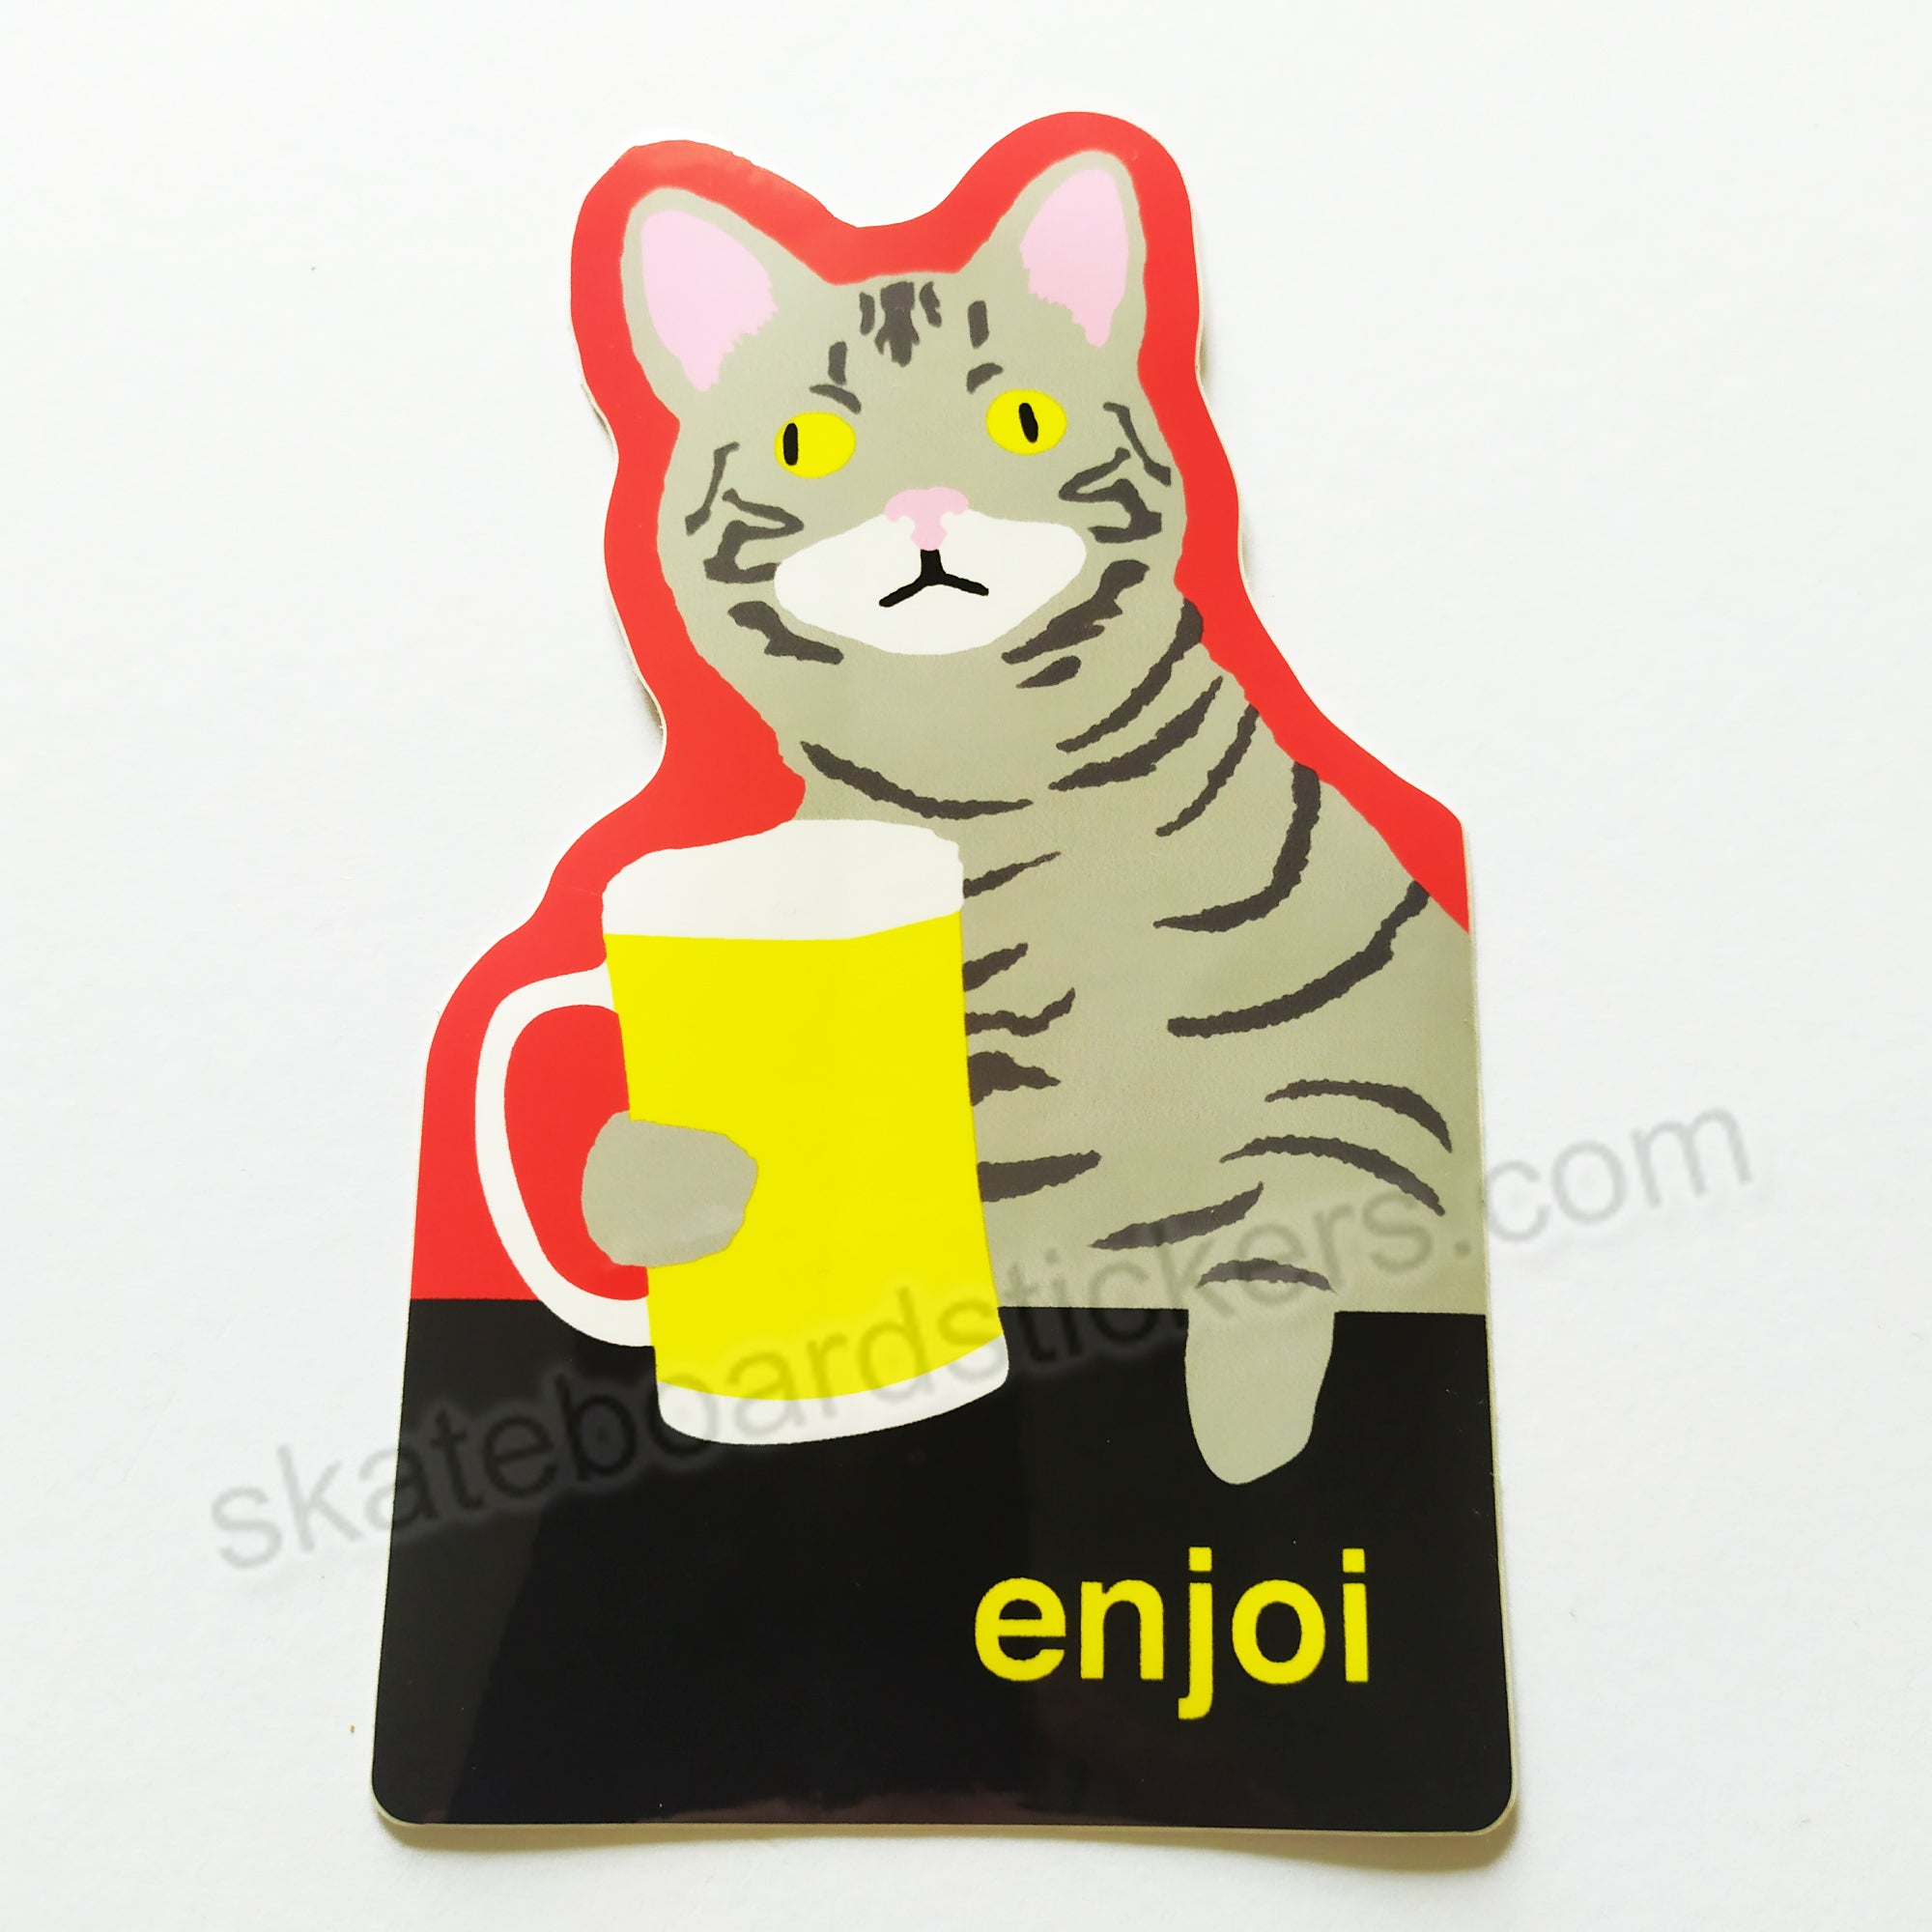 Enjoi Skateboard Sticker - "Drinking Cat" - SkateboardStickers.com